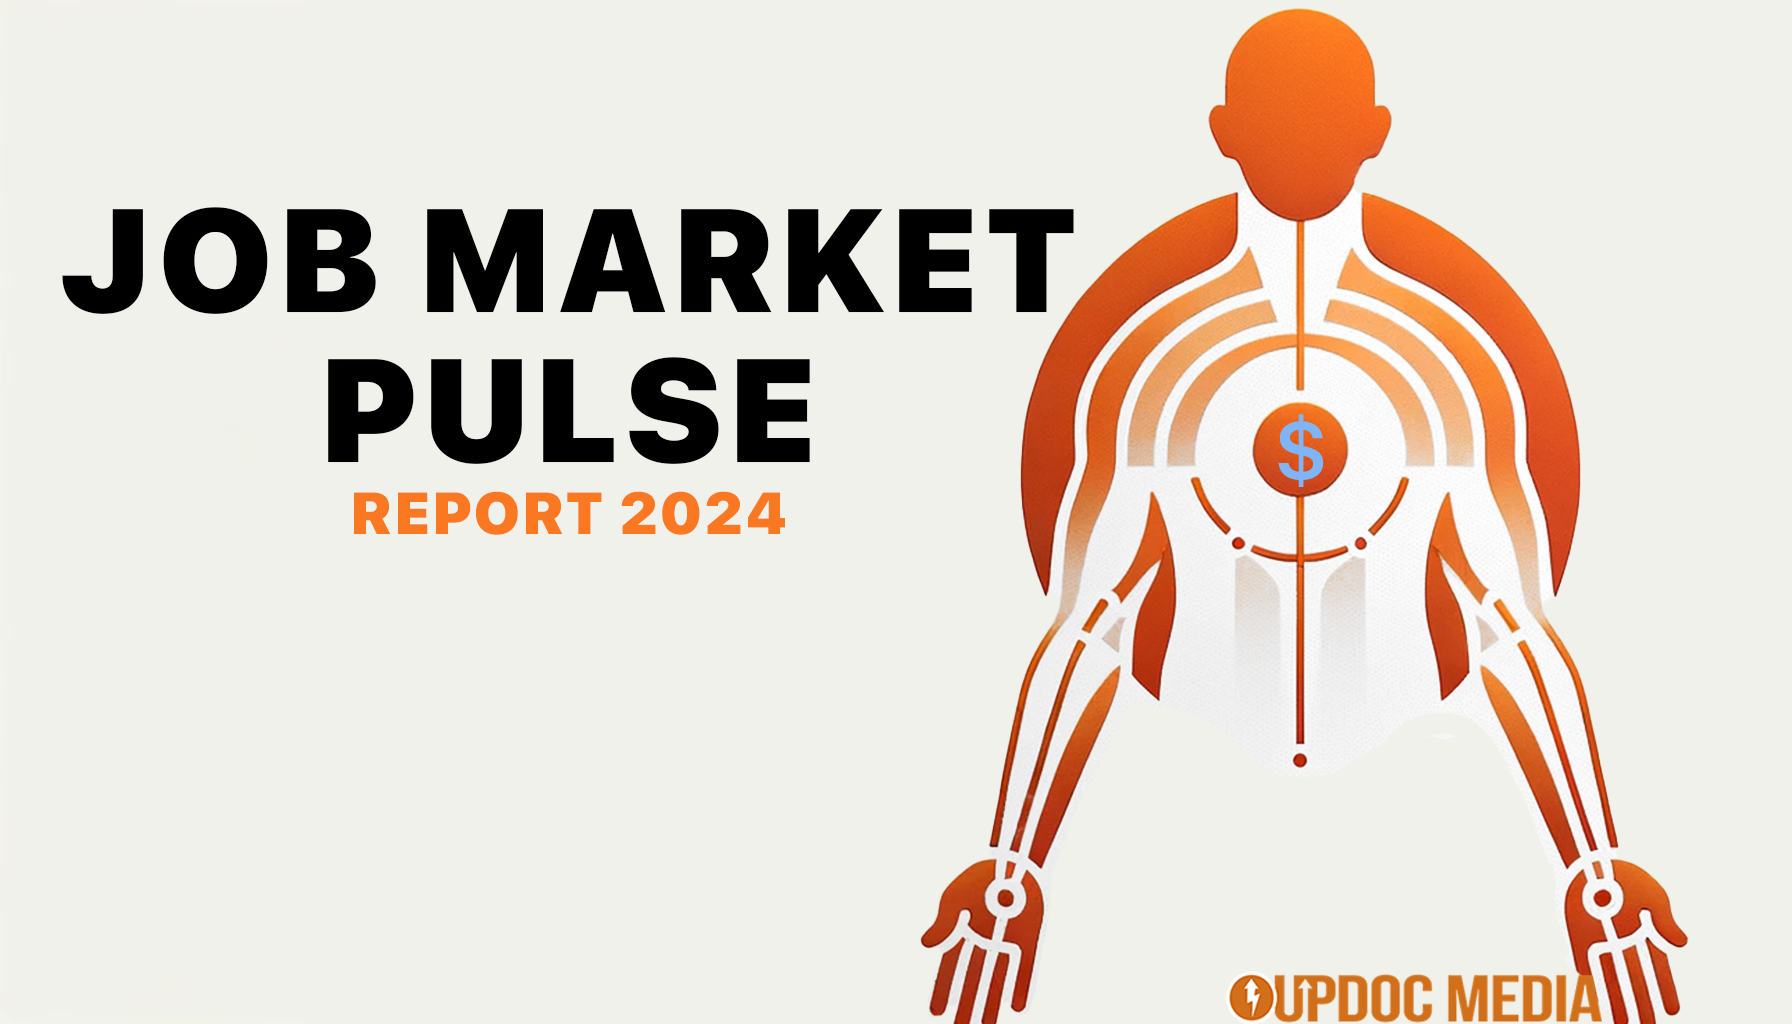 Job Market Pulse 2024